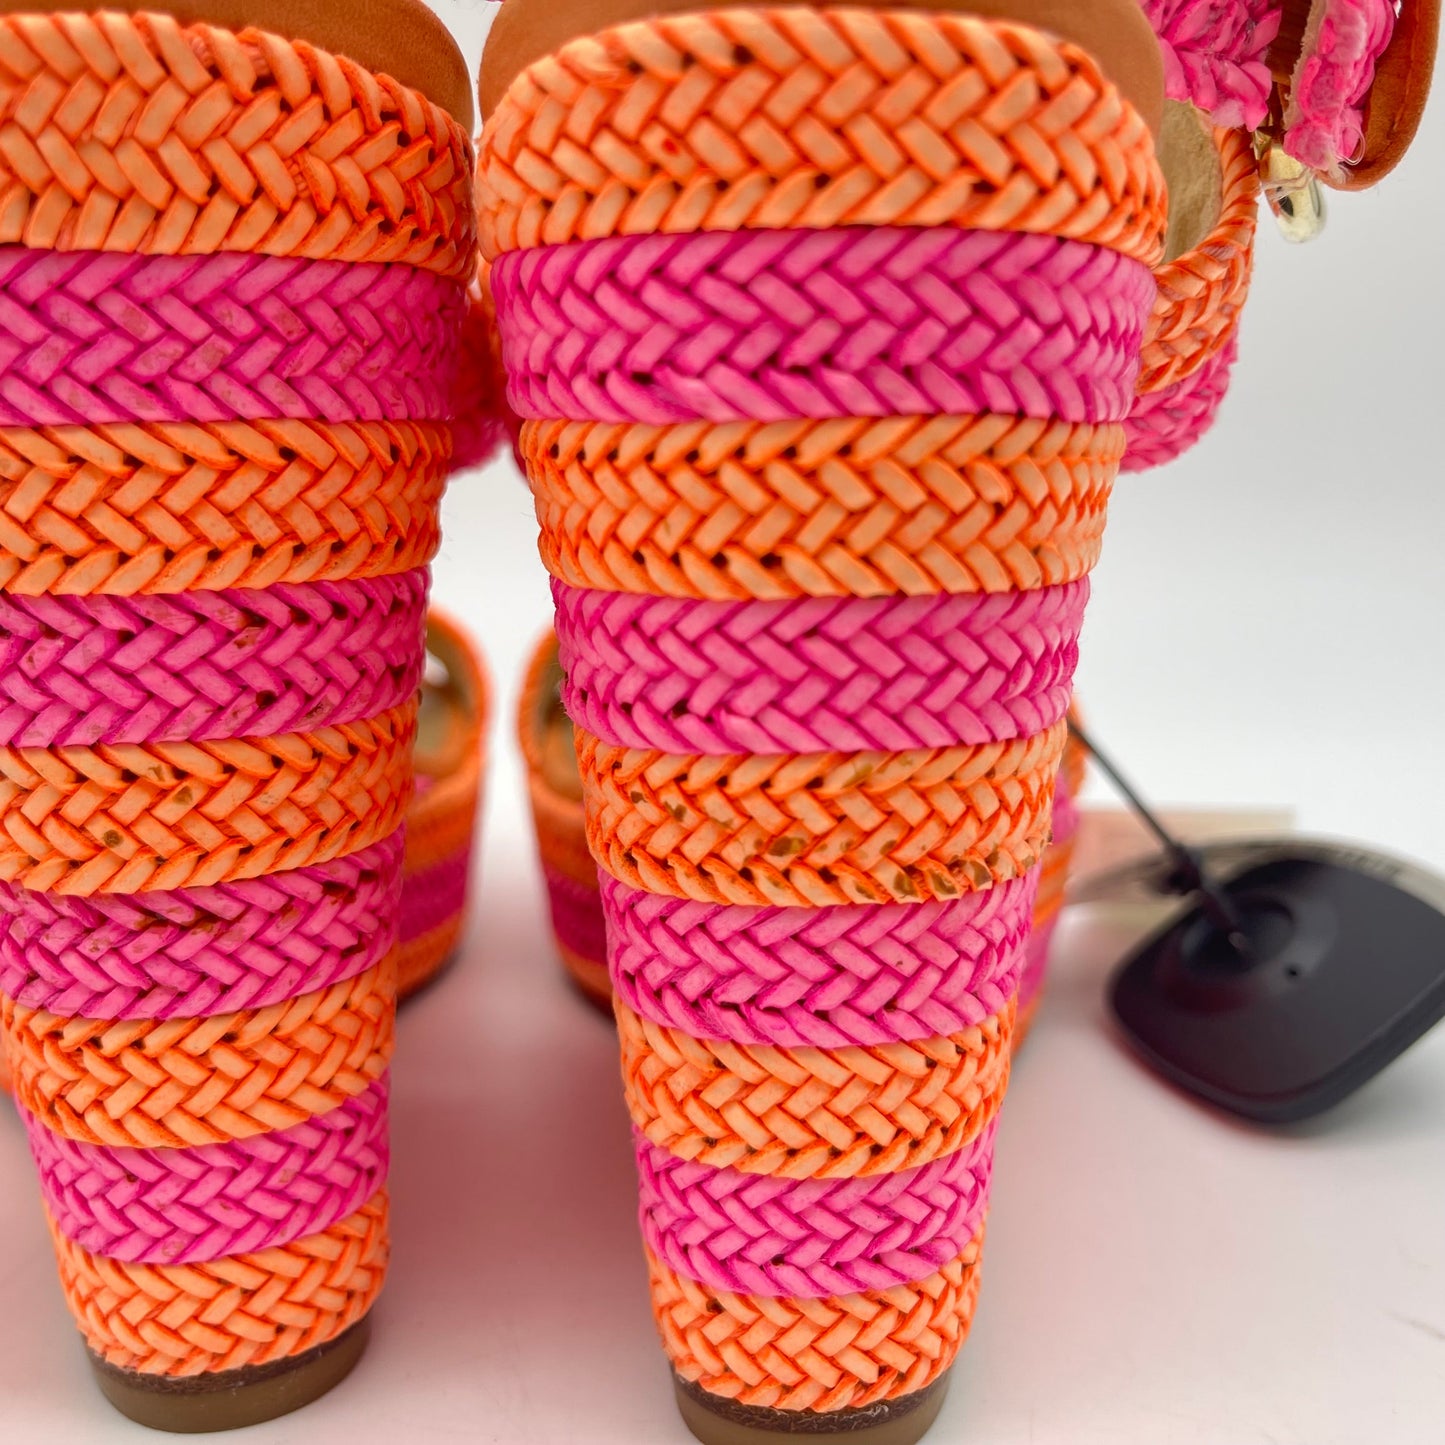 Orange & Pink Sandals Heels Wedge Stuart Weitzman, Size 6